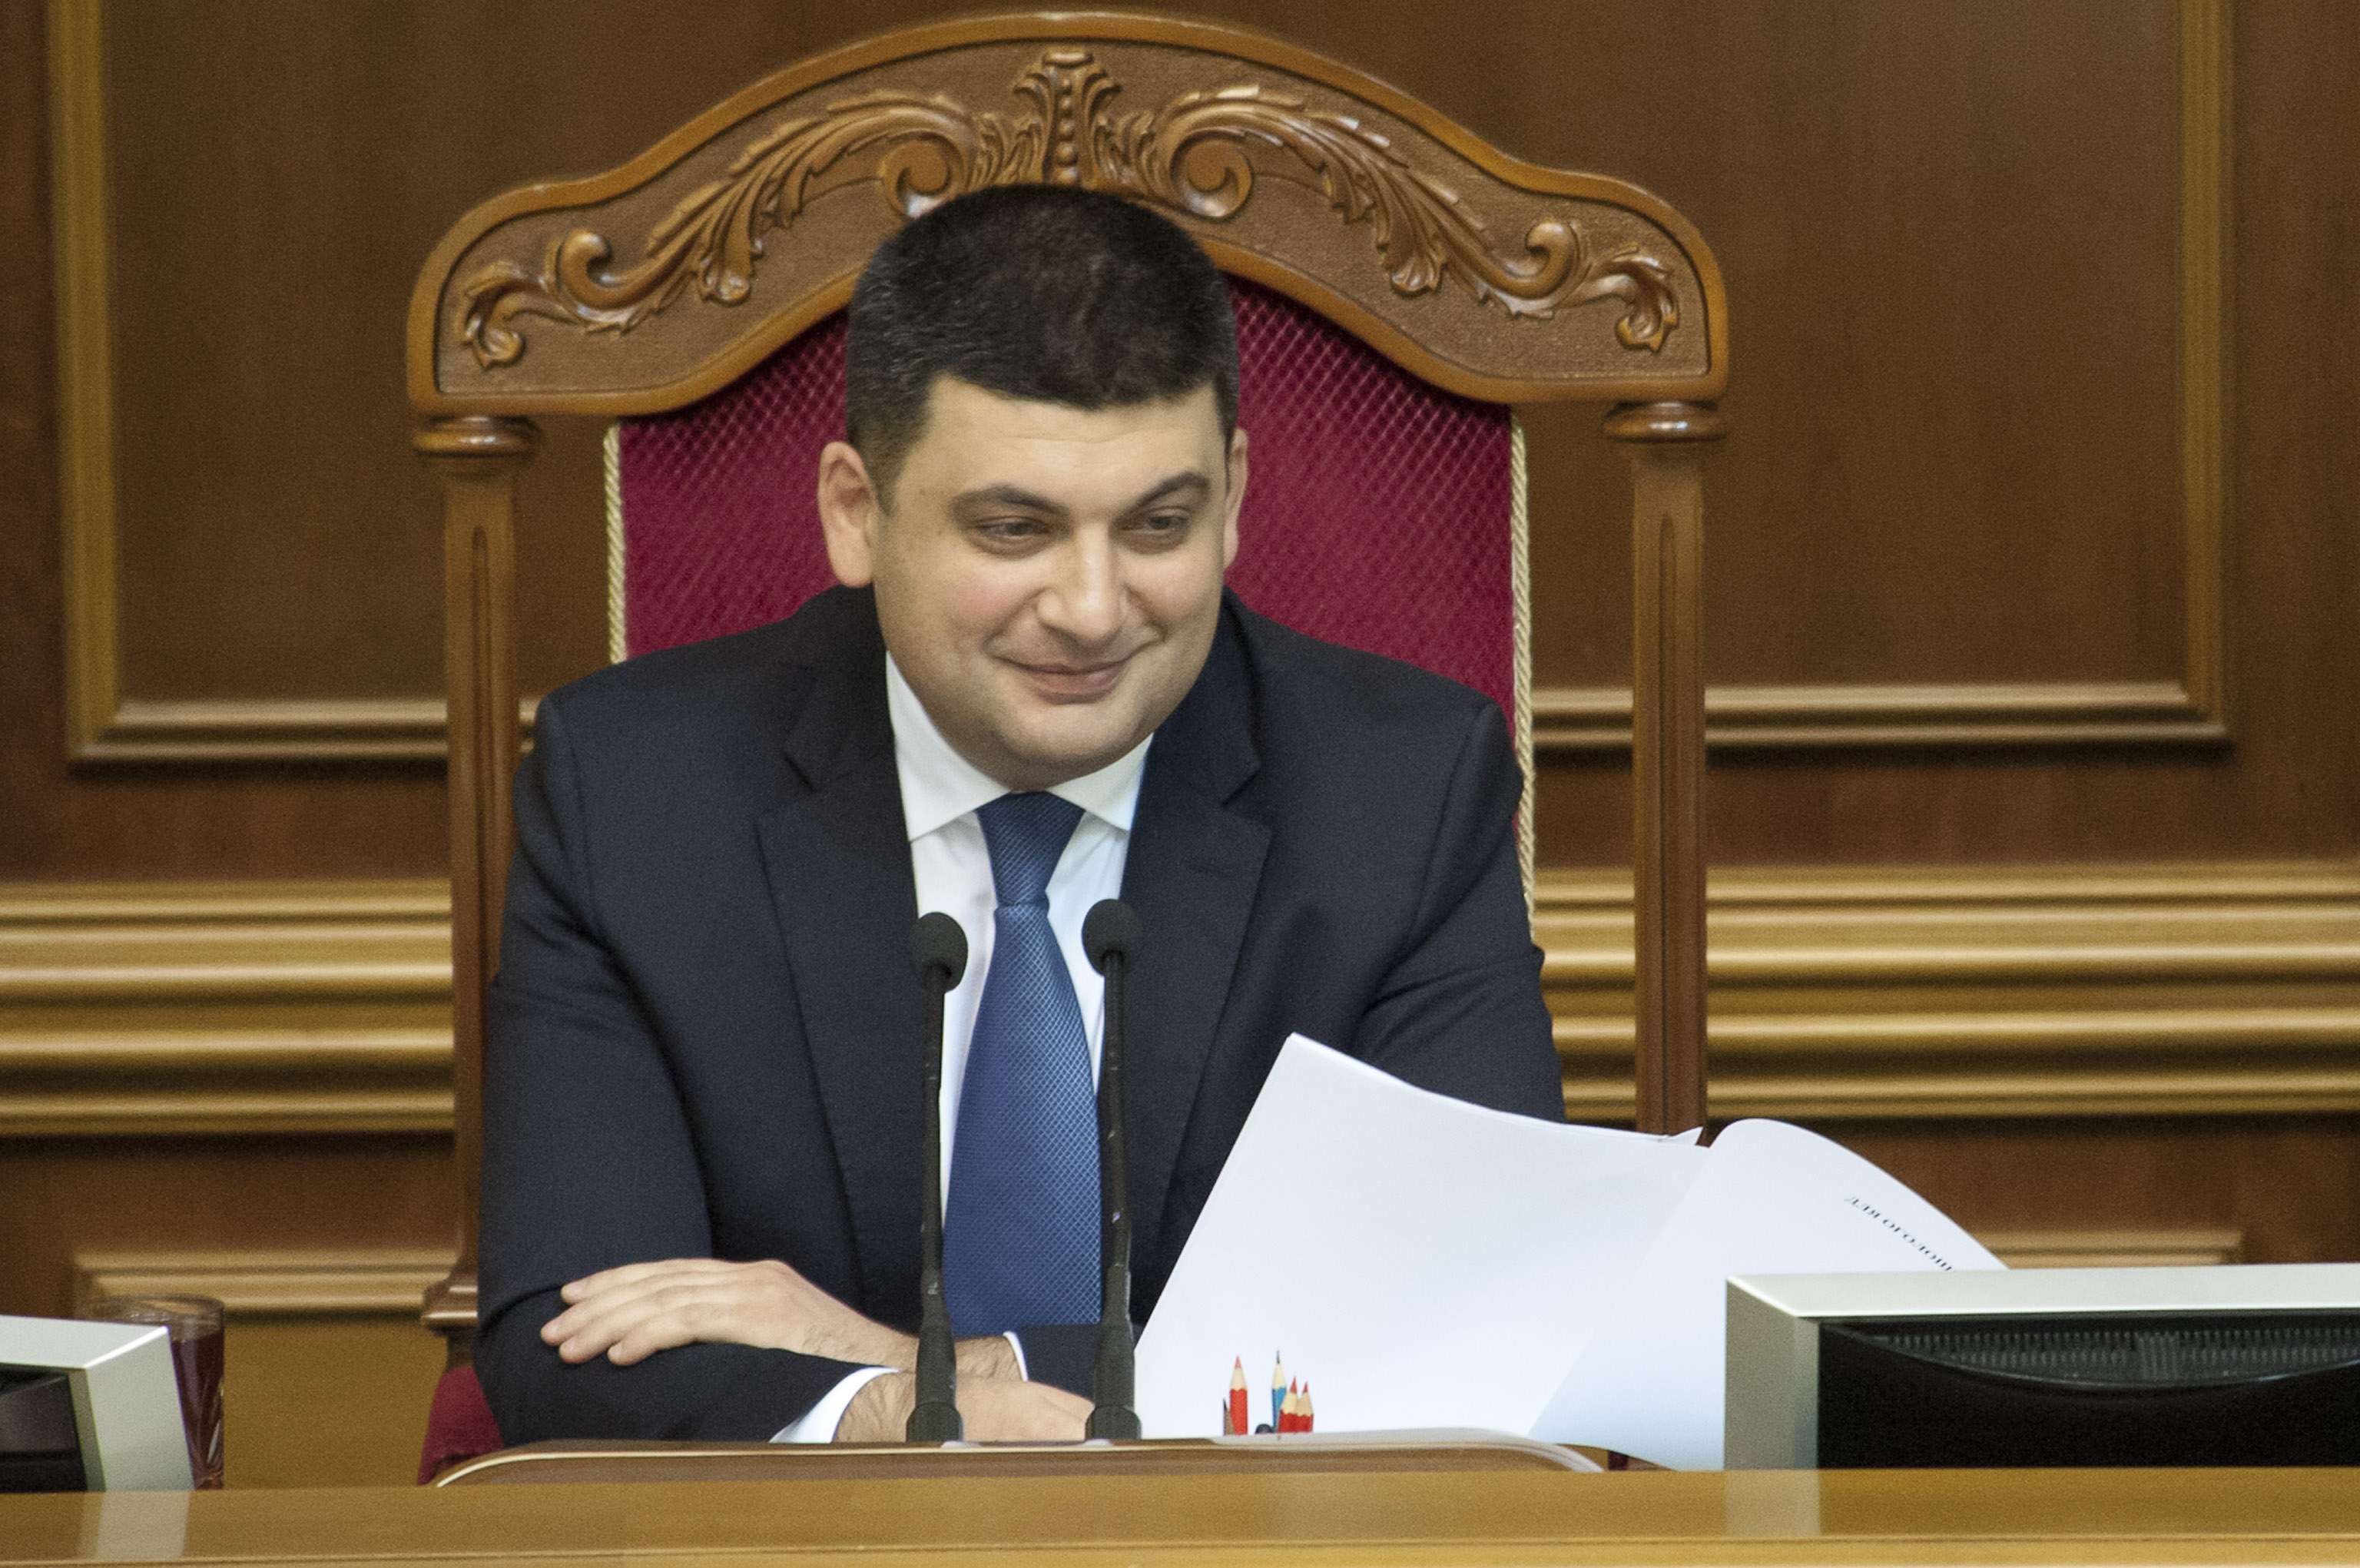 Новый премьер Украины Гройсман: позорной работы больше не будет, будем жить по-человечески